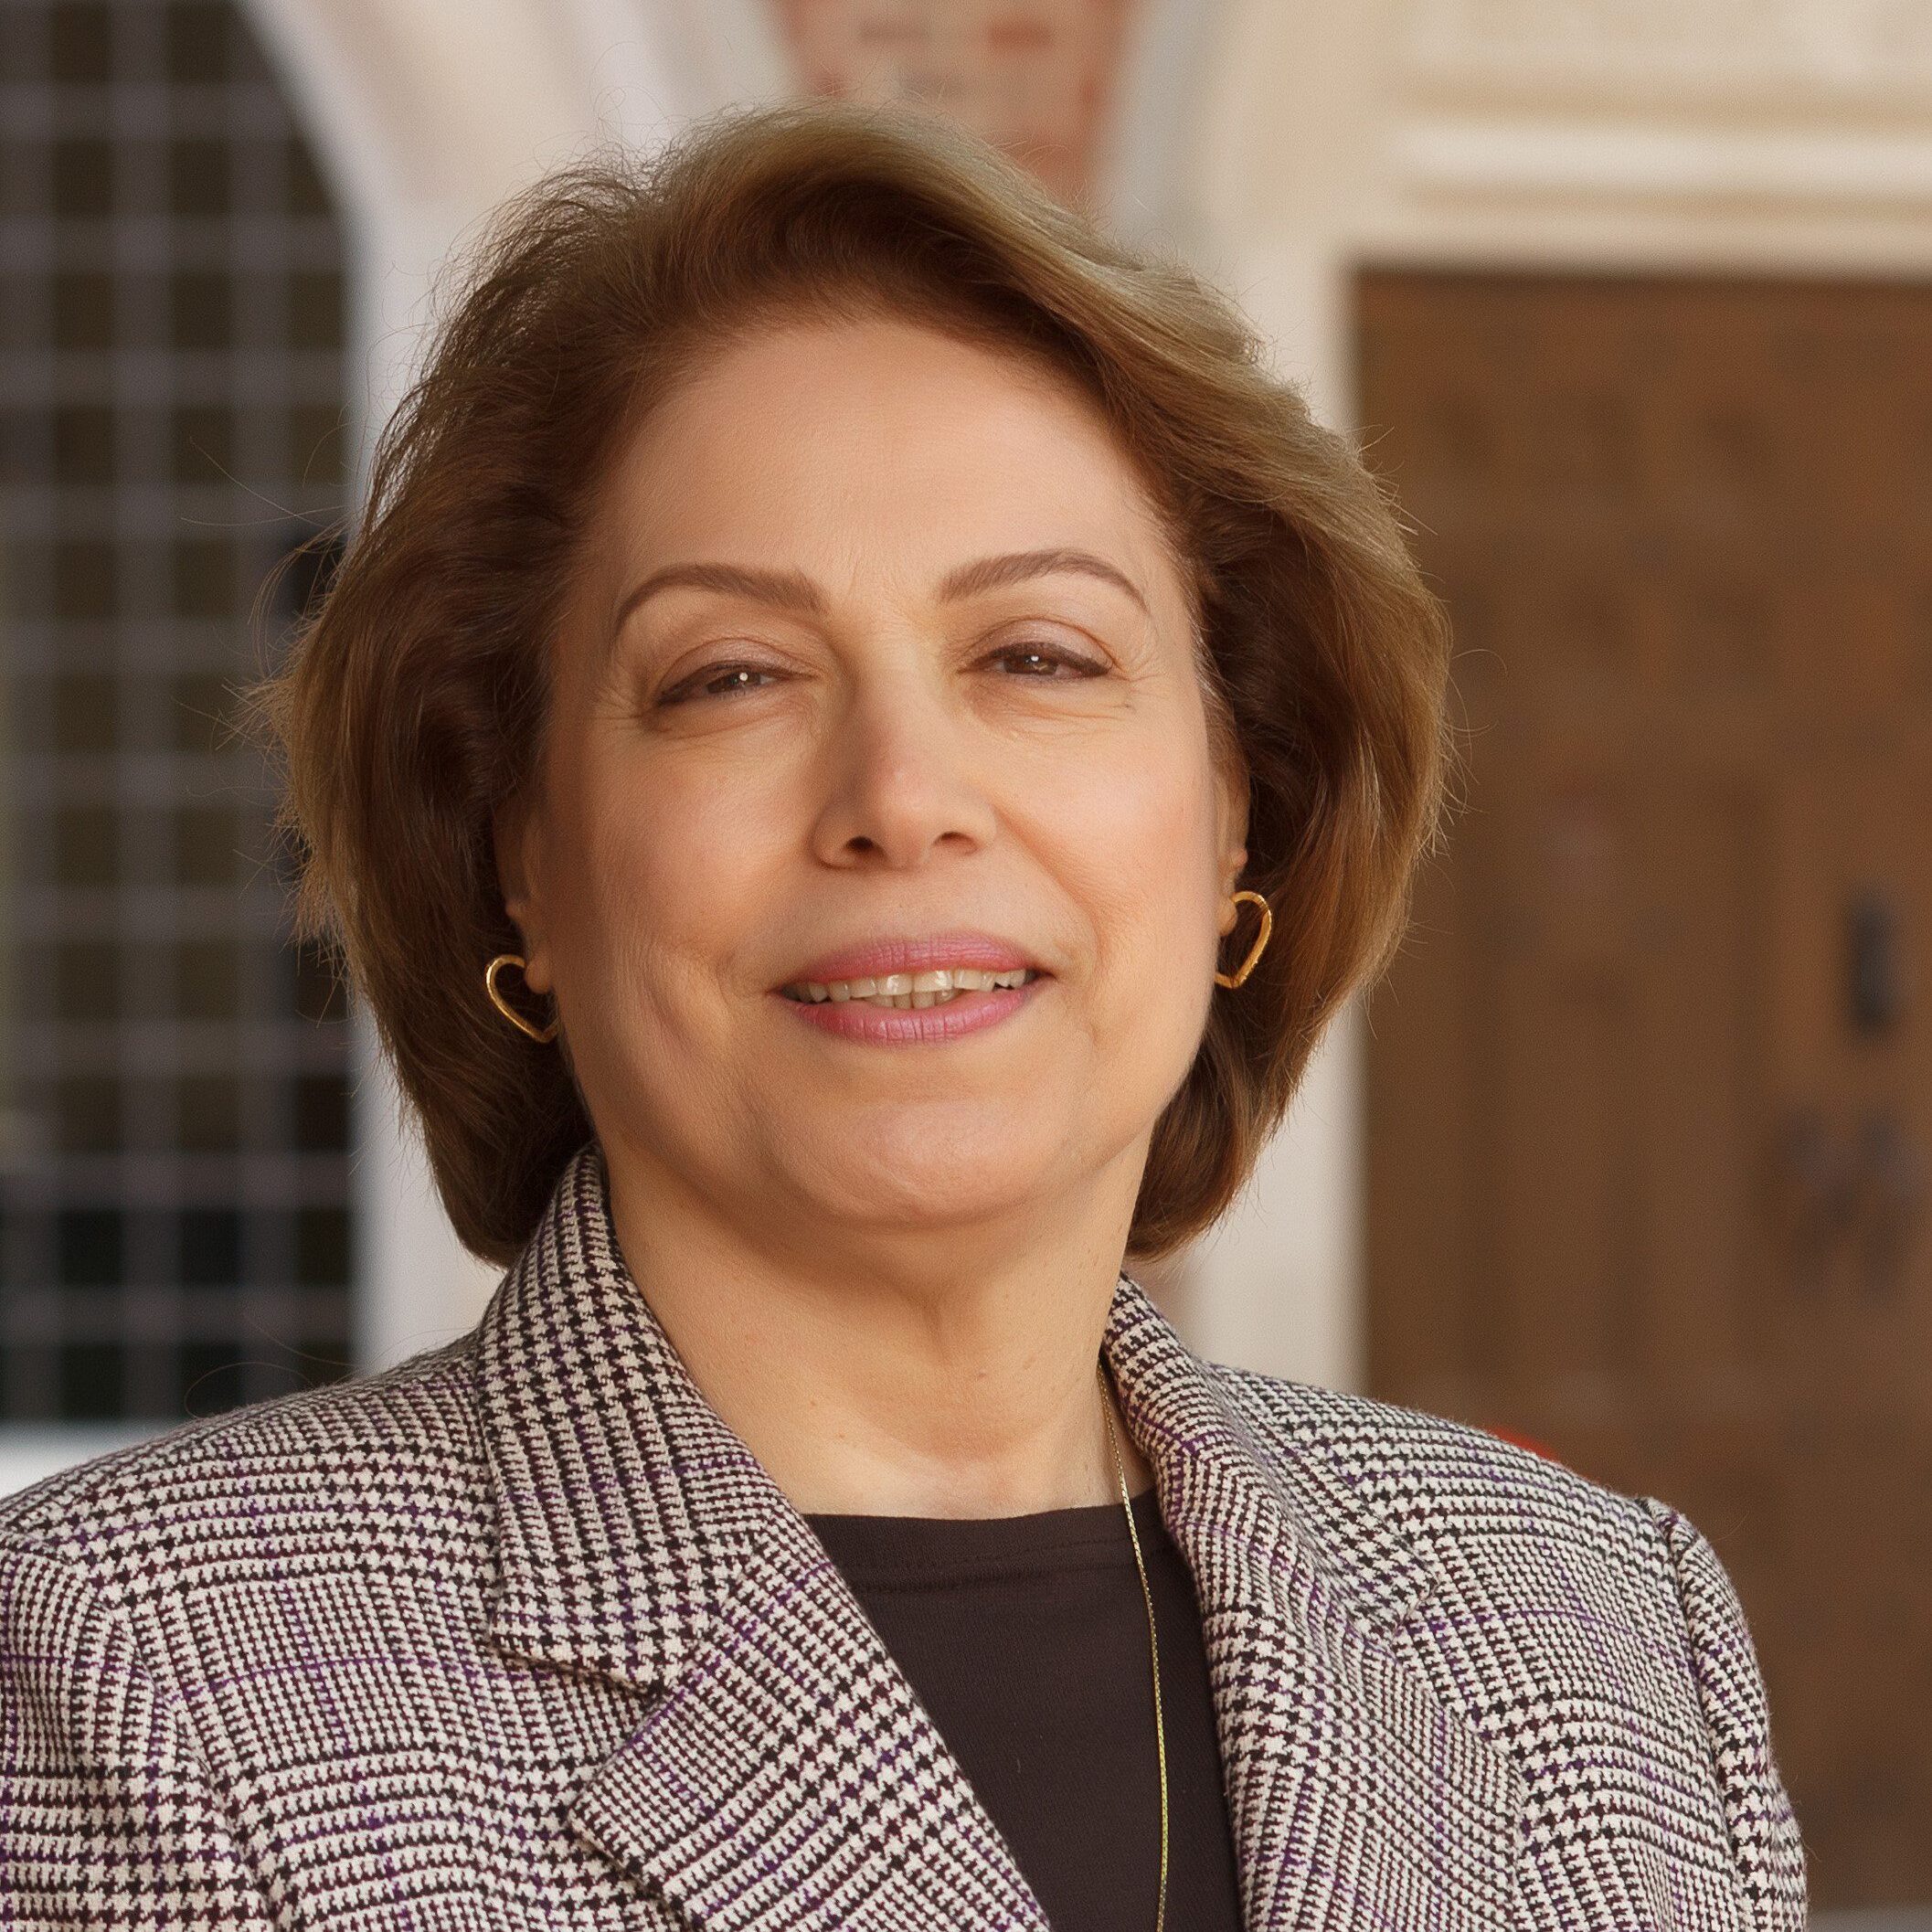 Dr. Azizah Al-Hibri